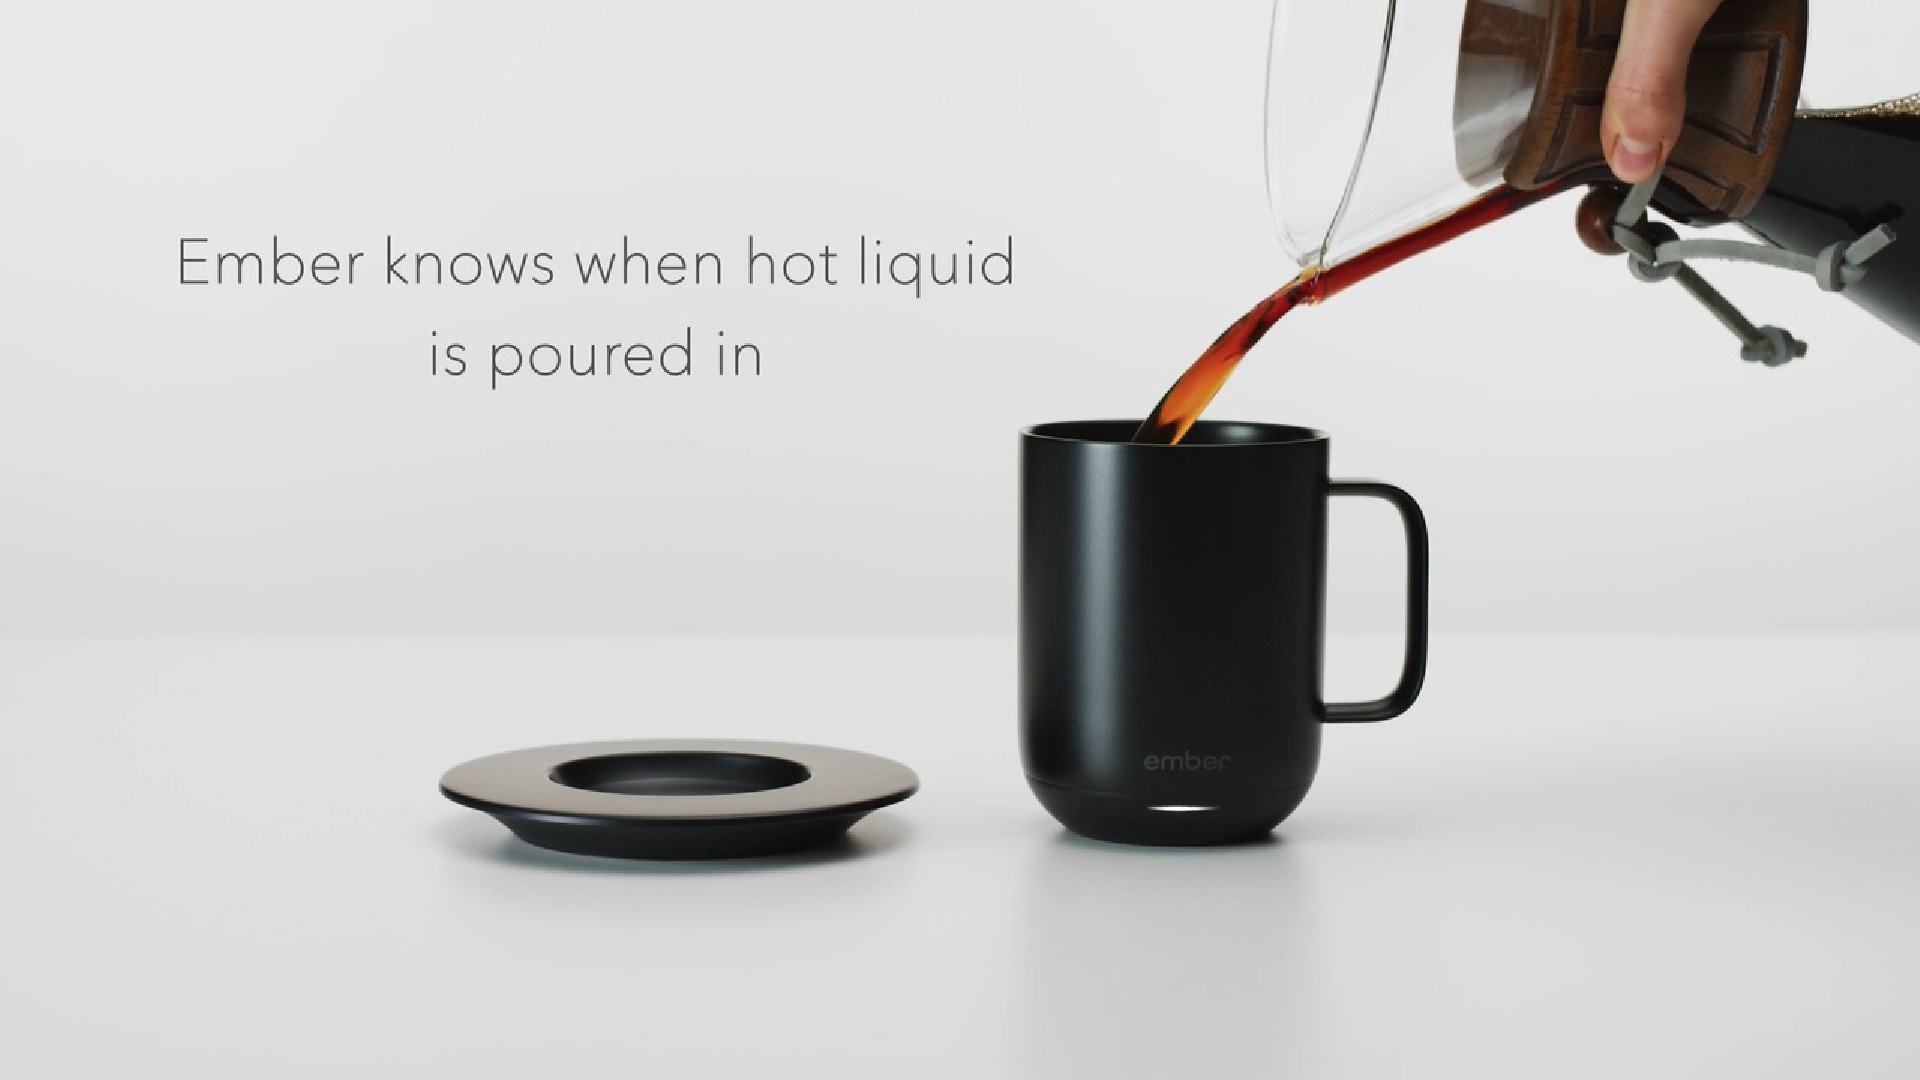 Cốc thông minh Ember Ceramic Mug nay đã có kích cỡ lớn hơn trên cửa hàng Apple